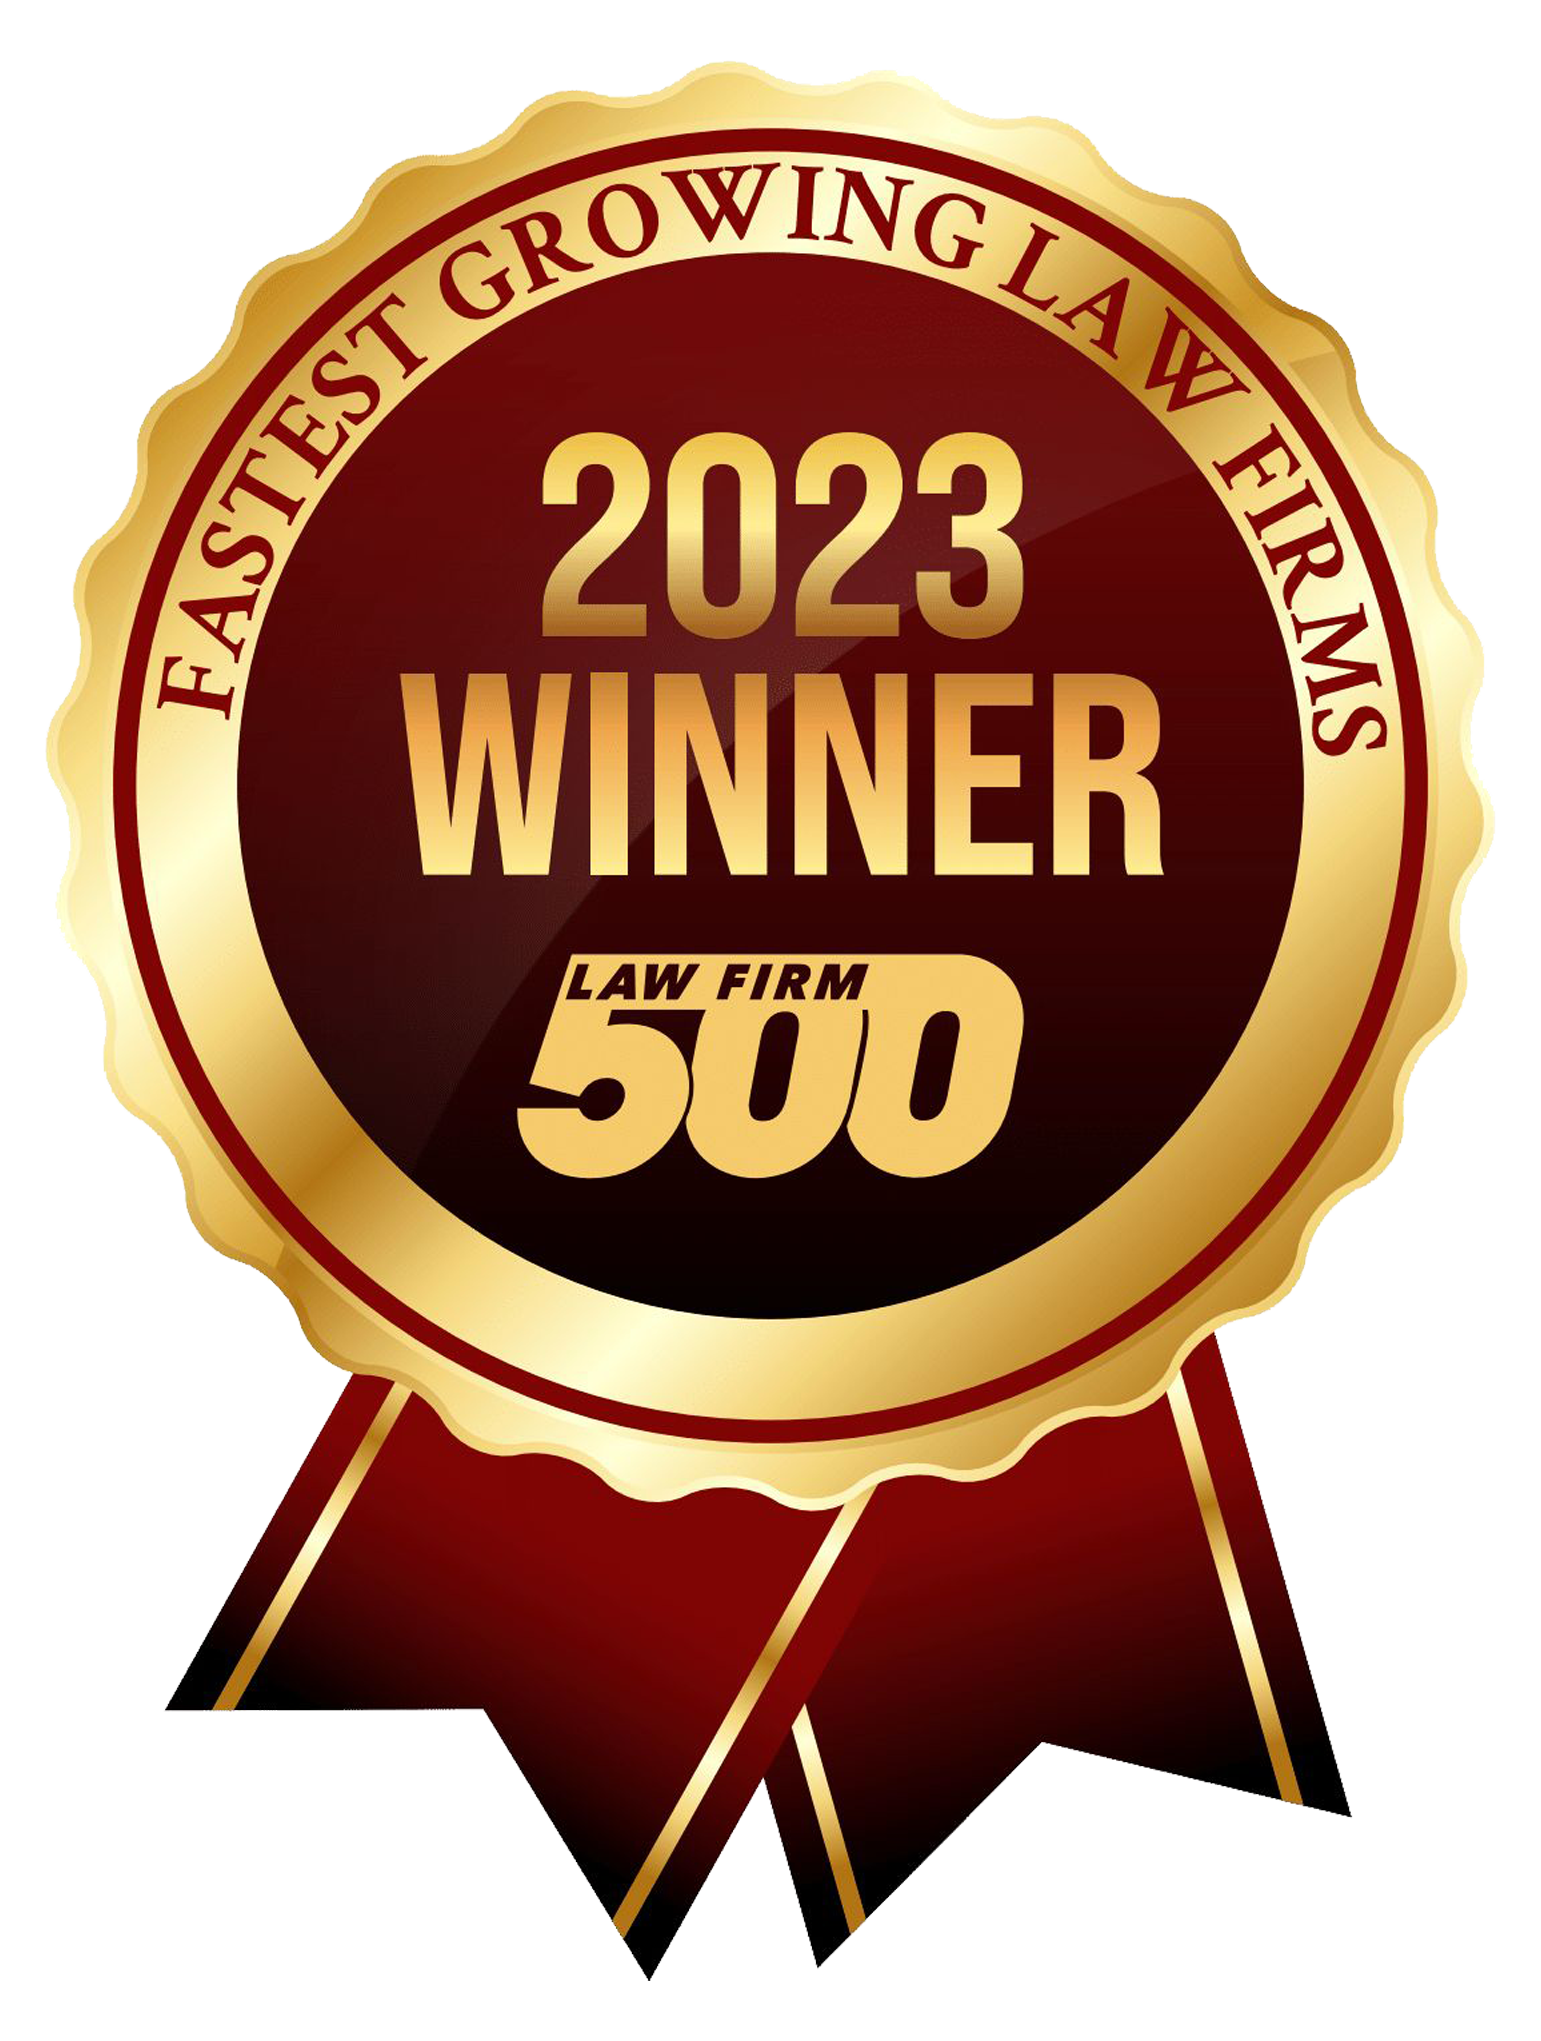 Law Firm 500 winner logo